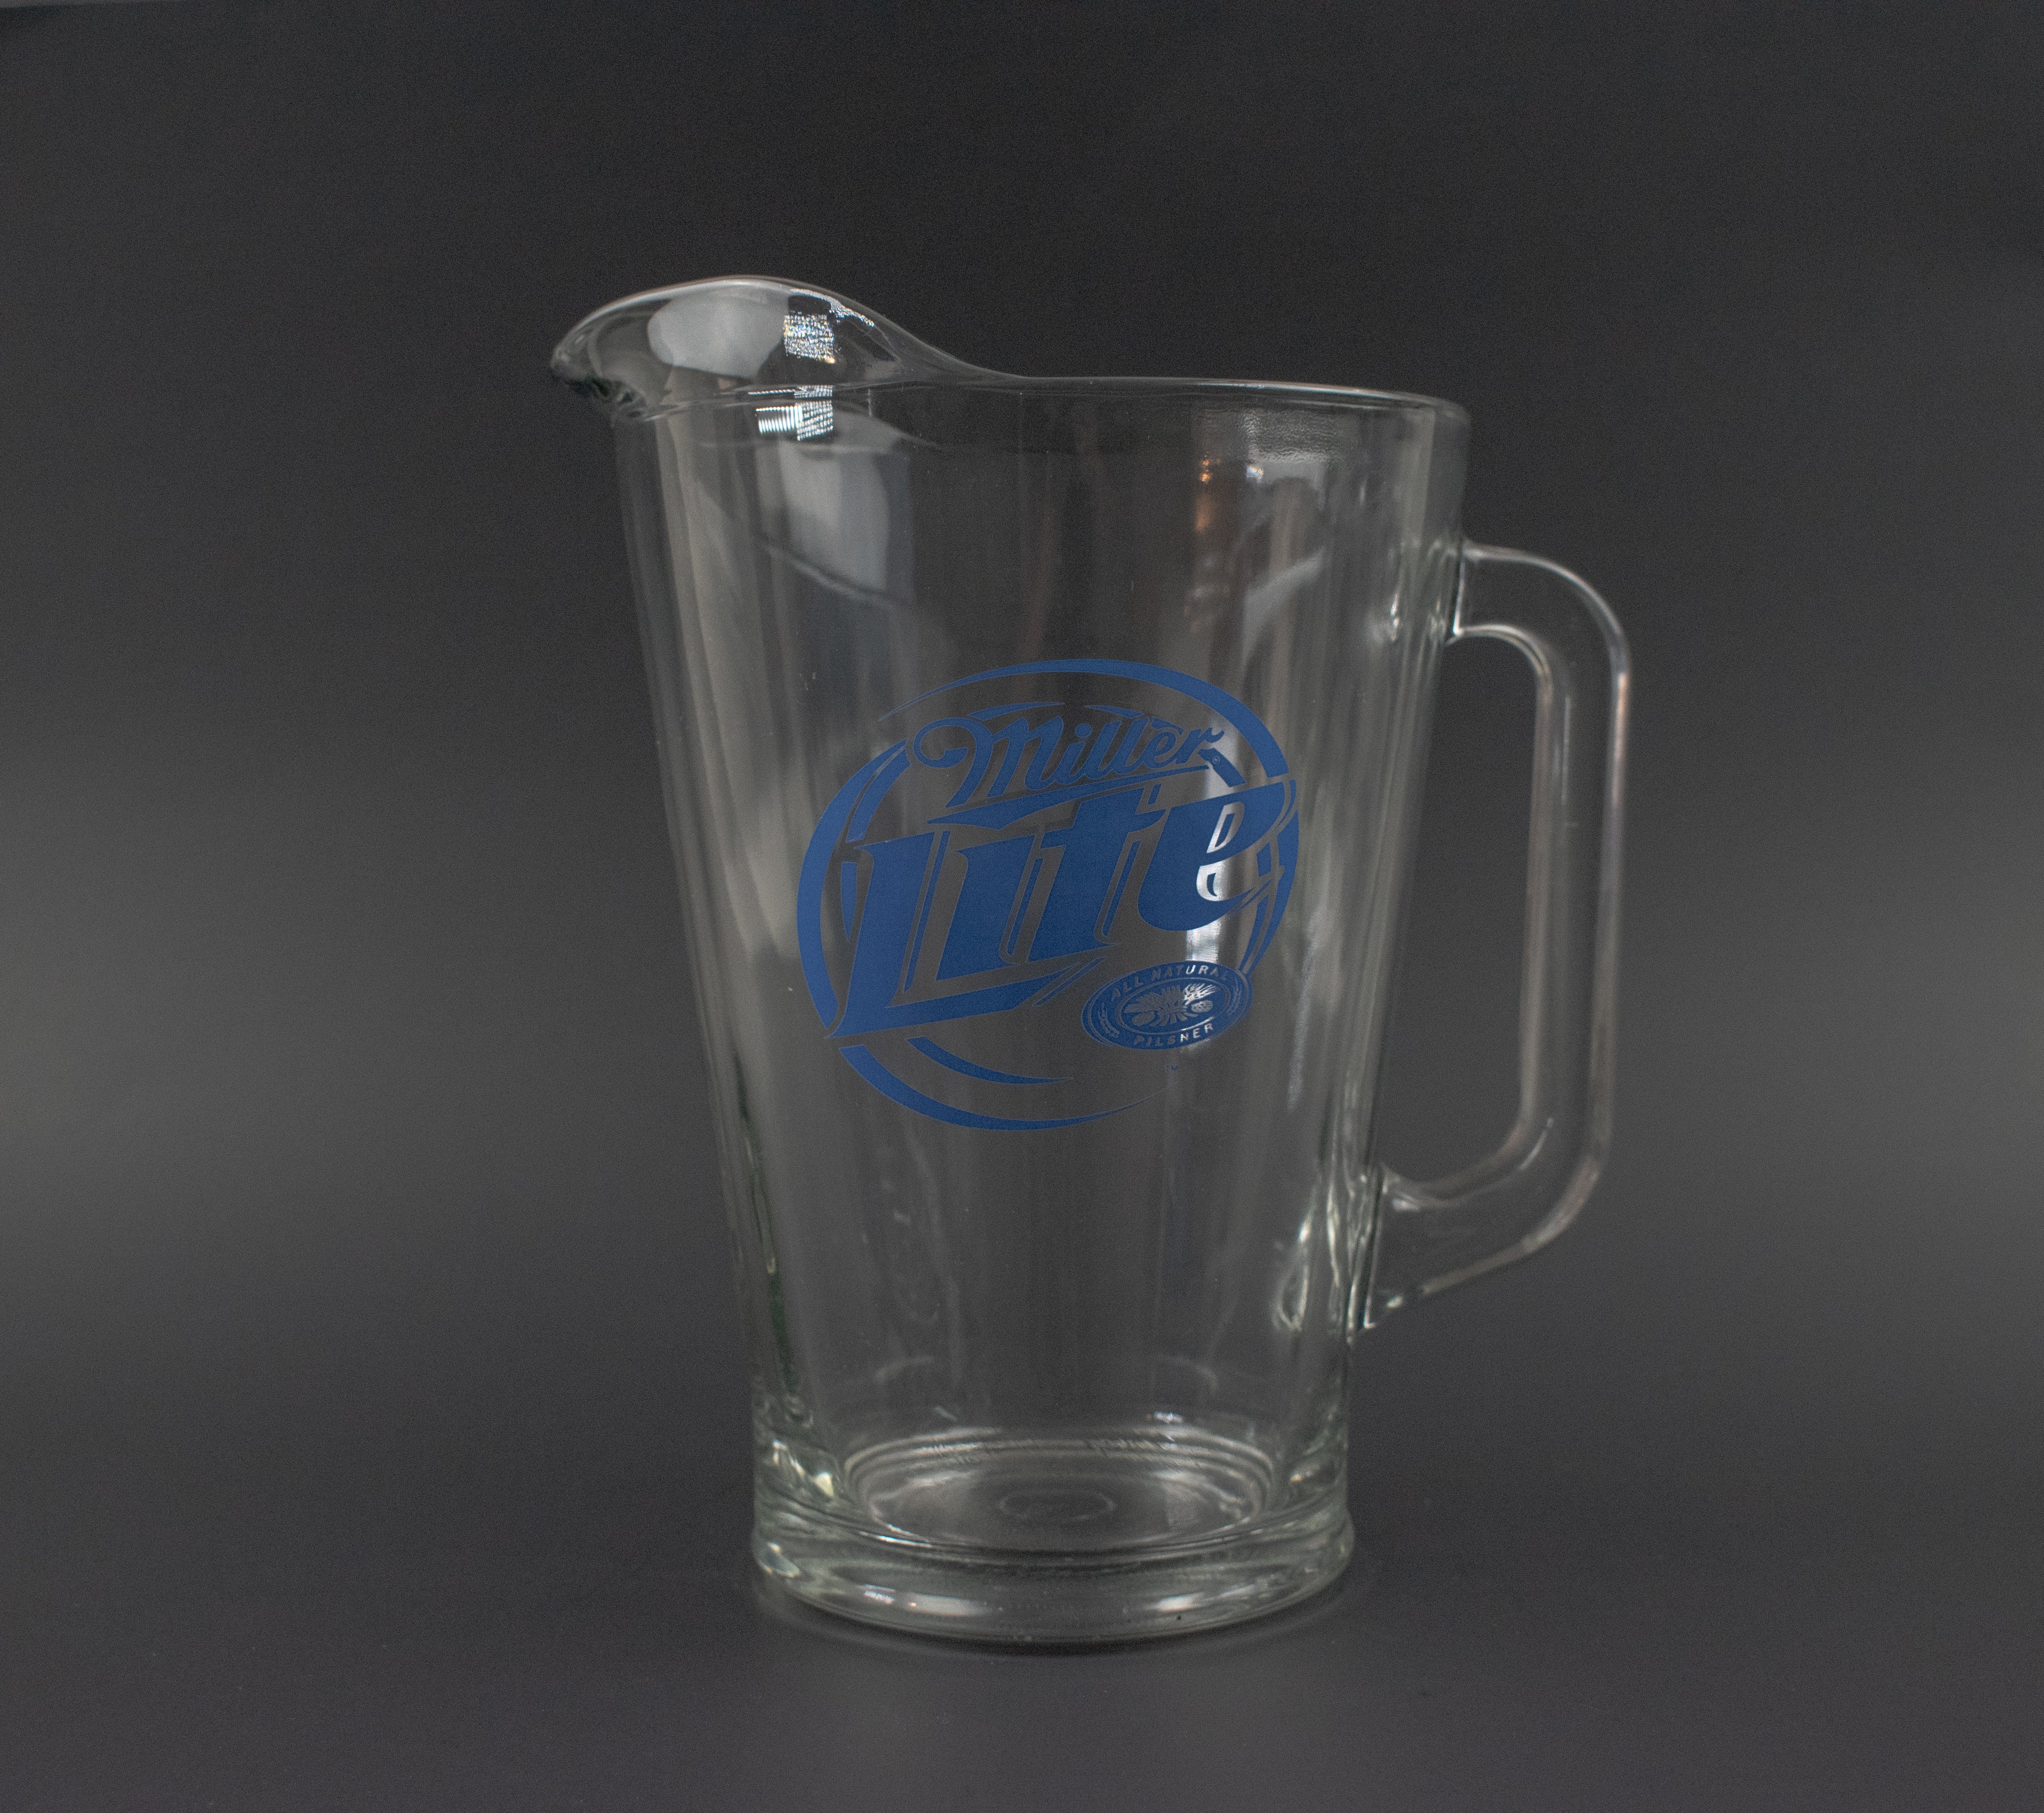 Miller Lite Glass Pitcher All Natural Pilsner Beer Pitcher Used